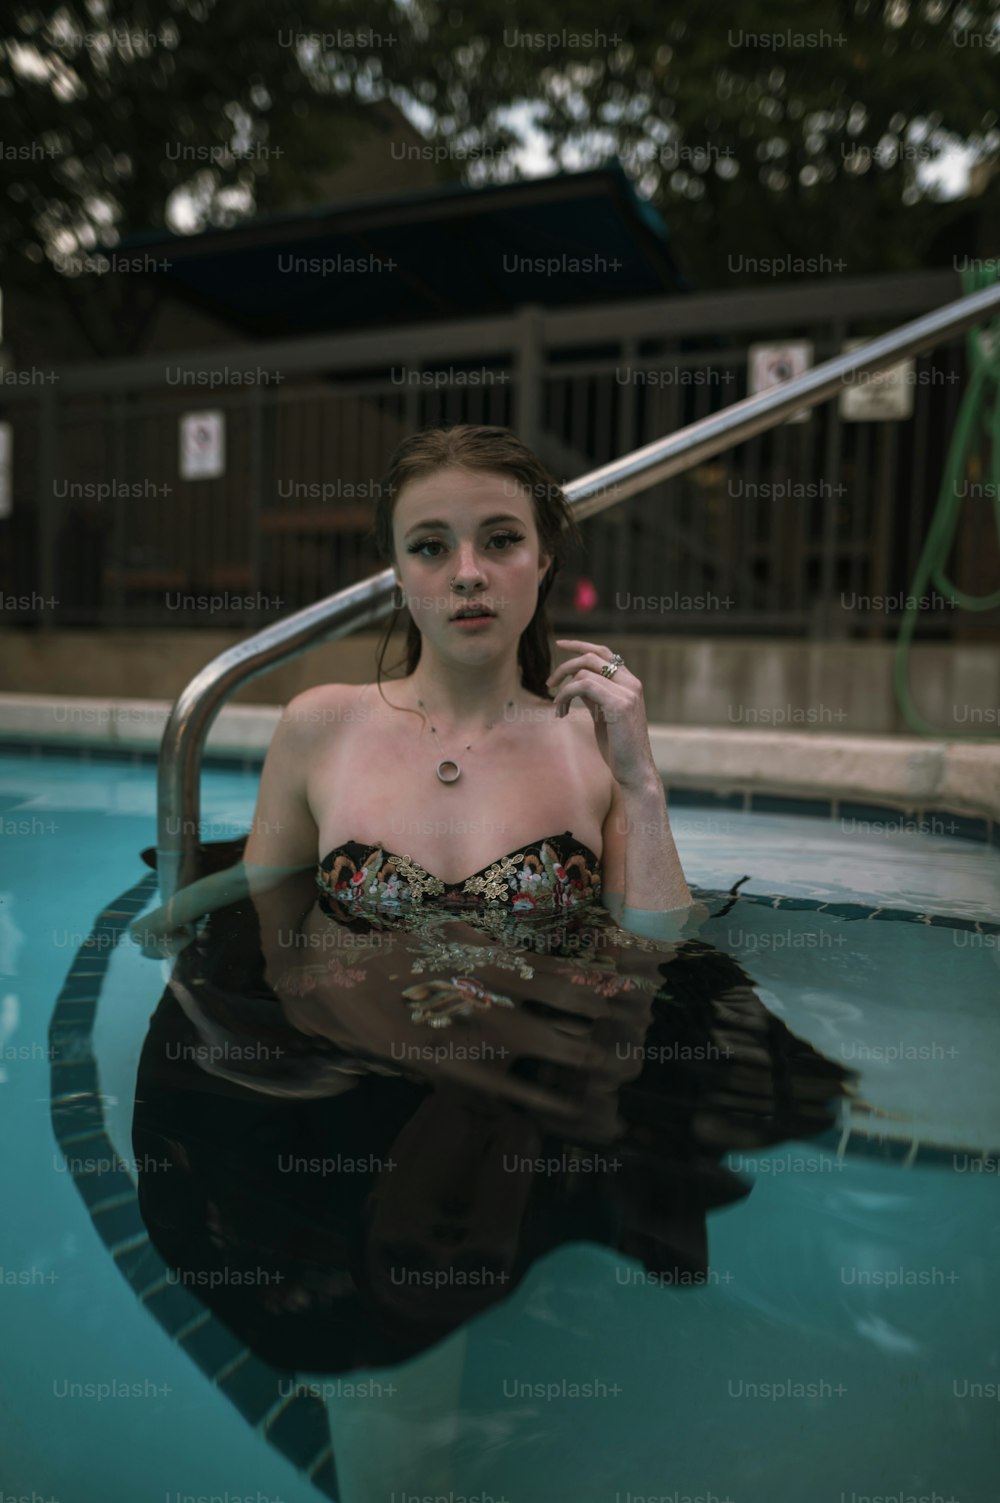 a woman in a bikini sitting in a pool